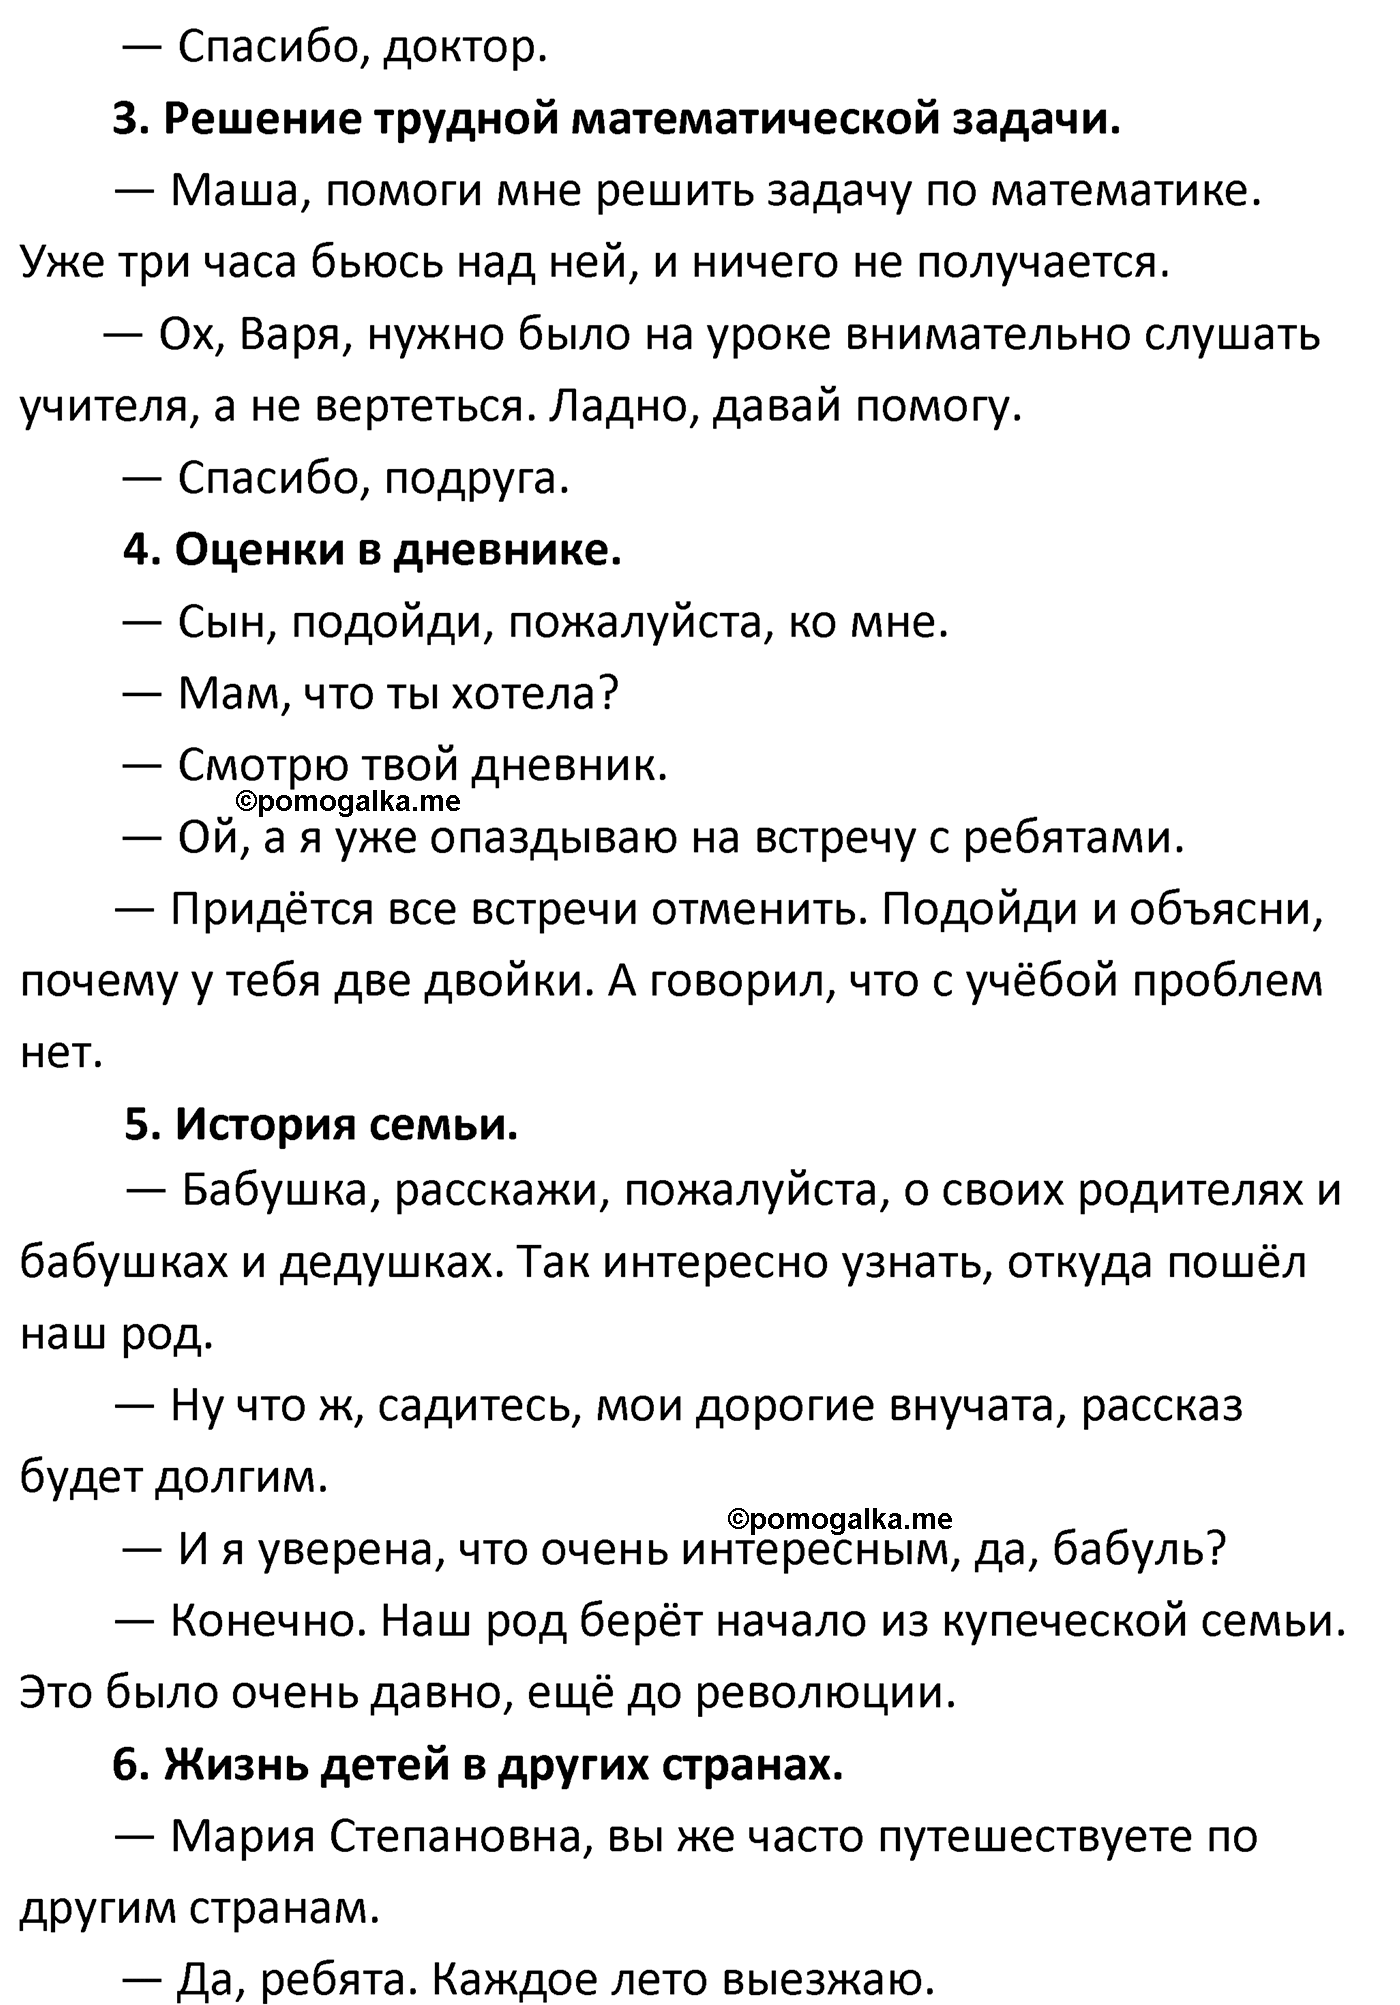 упражнение №117 русский язык 4 класс Климанова 2022 год